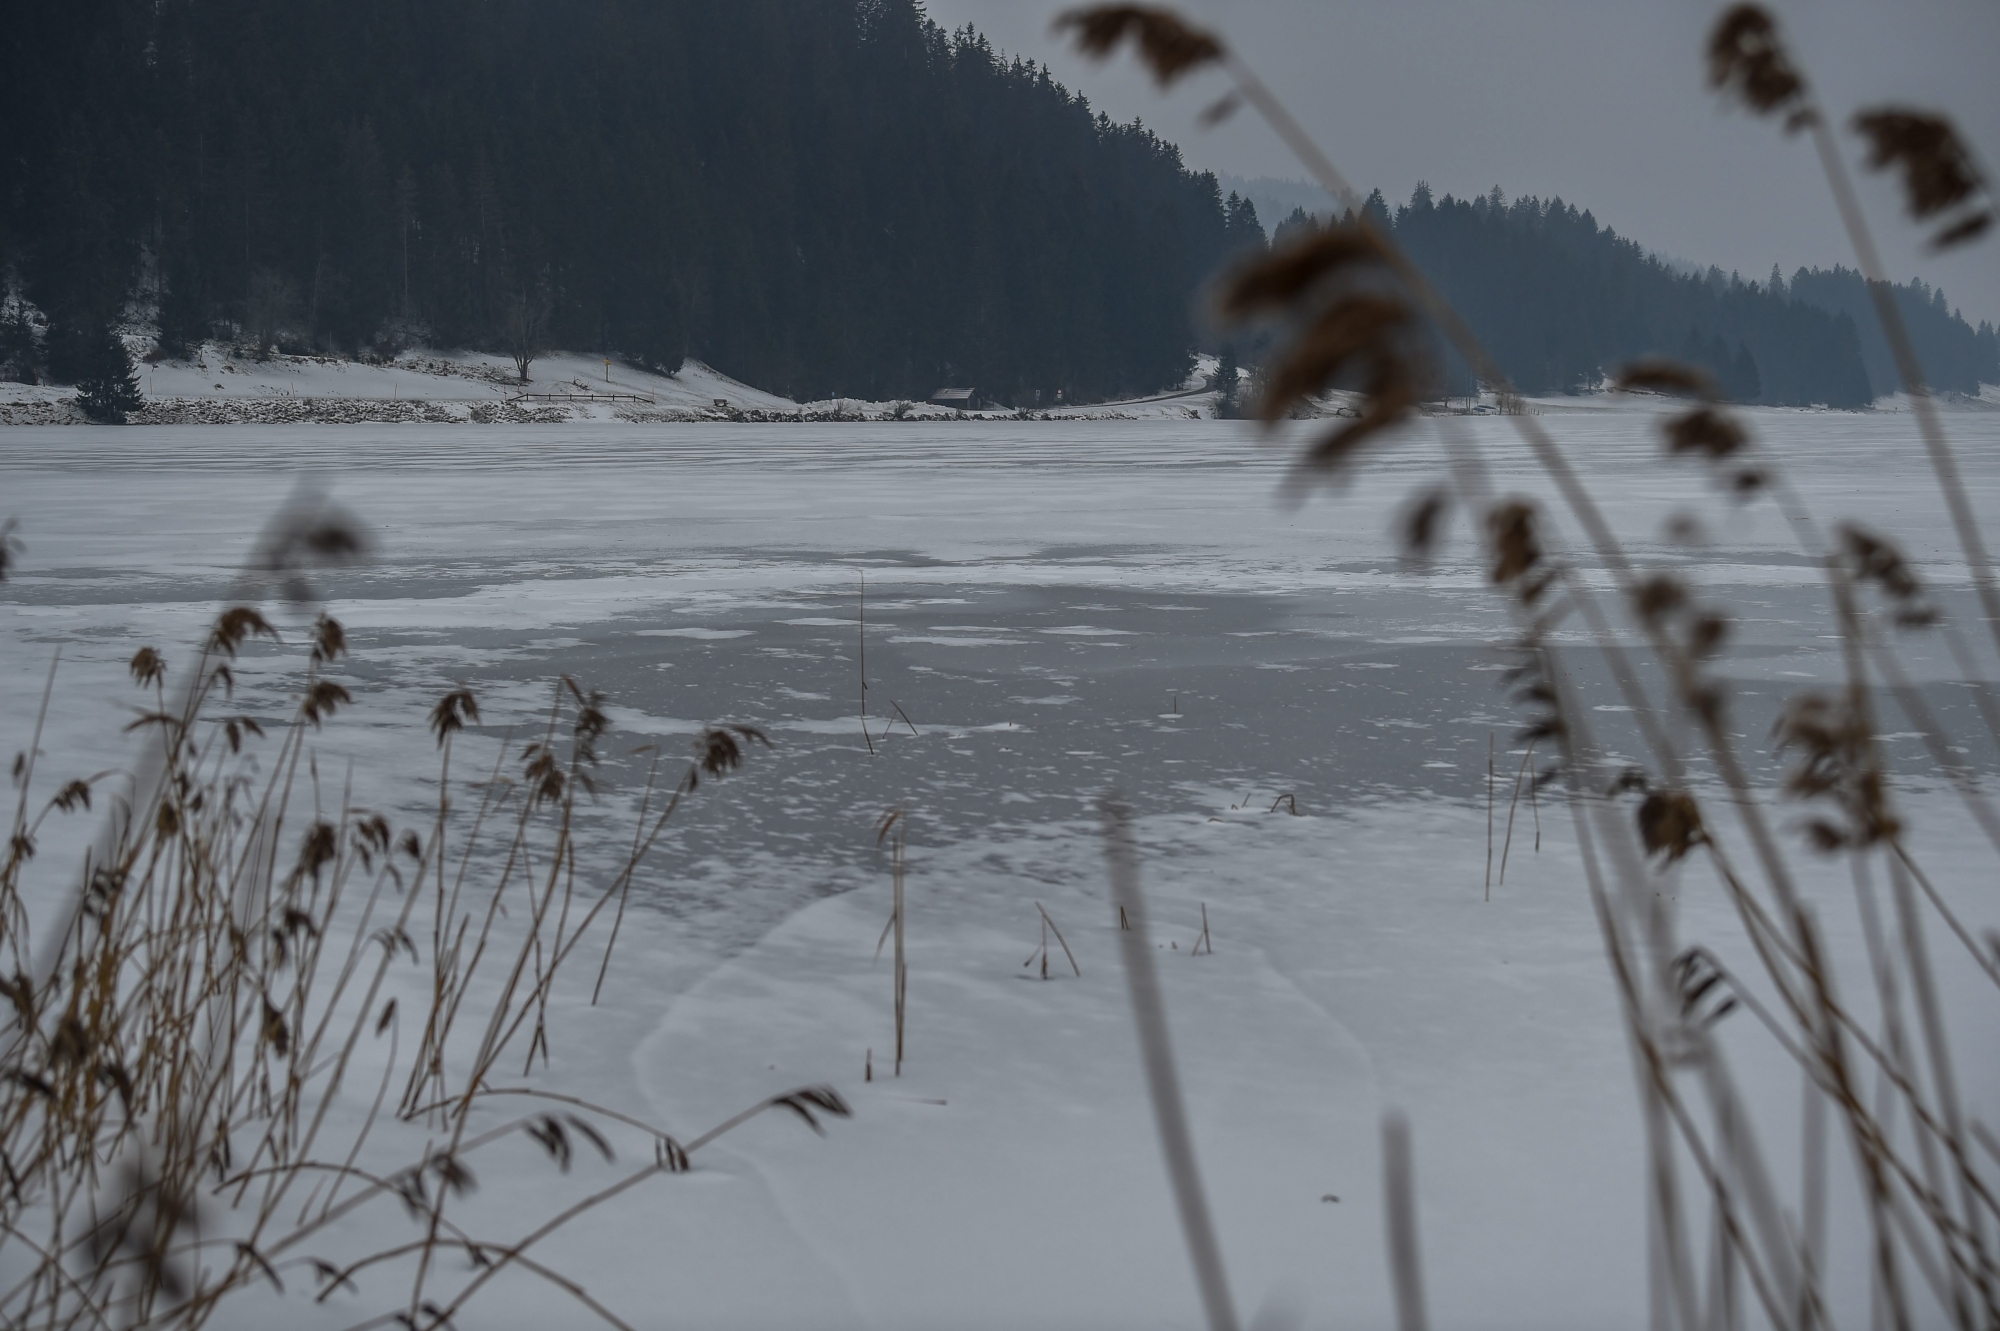 Il est exceptionnel que le lac soit encore gelé aussi tard dans l'année.